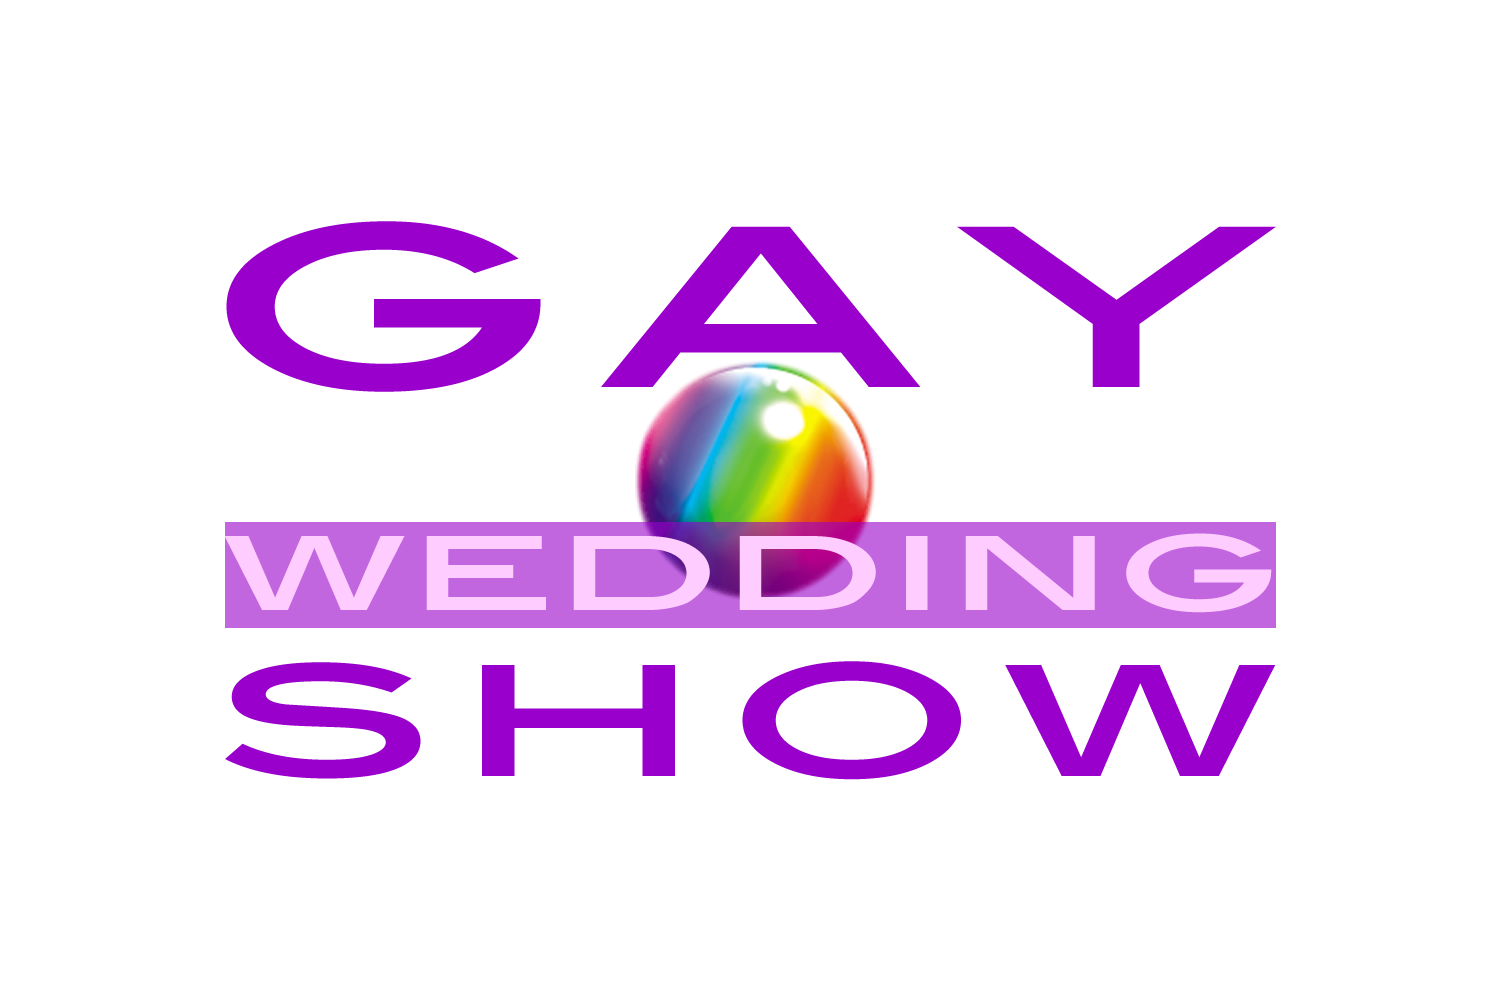 London Gay Wedding Show